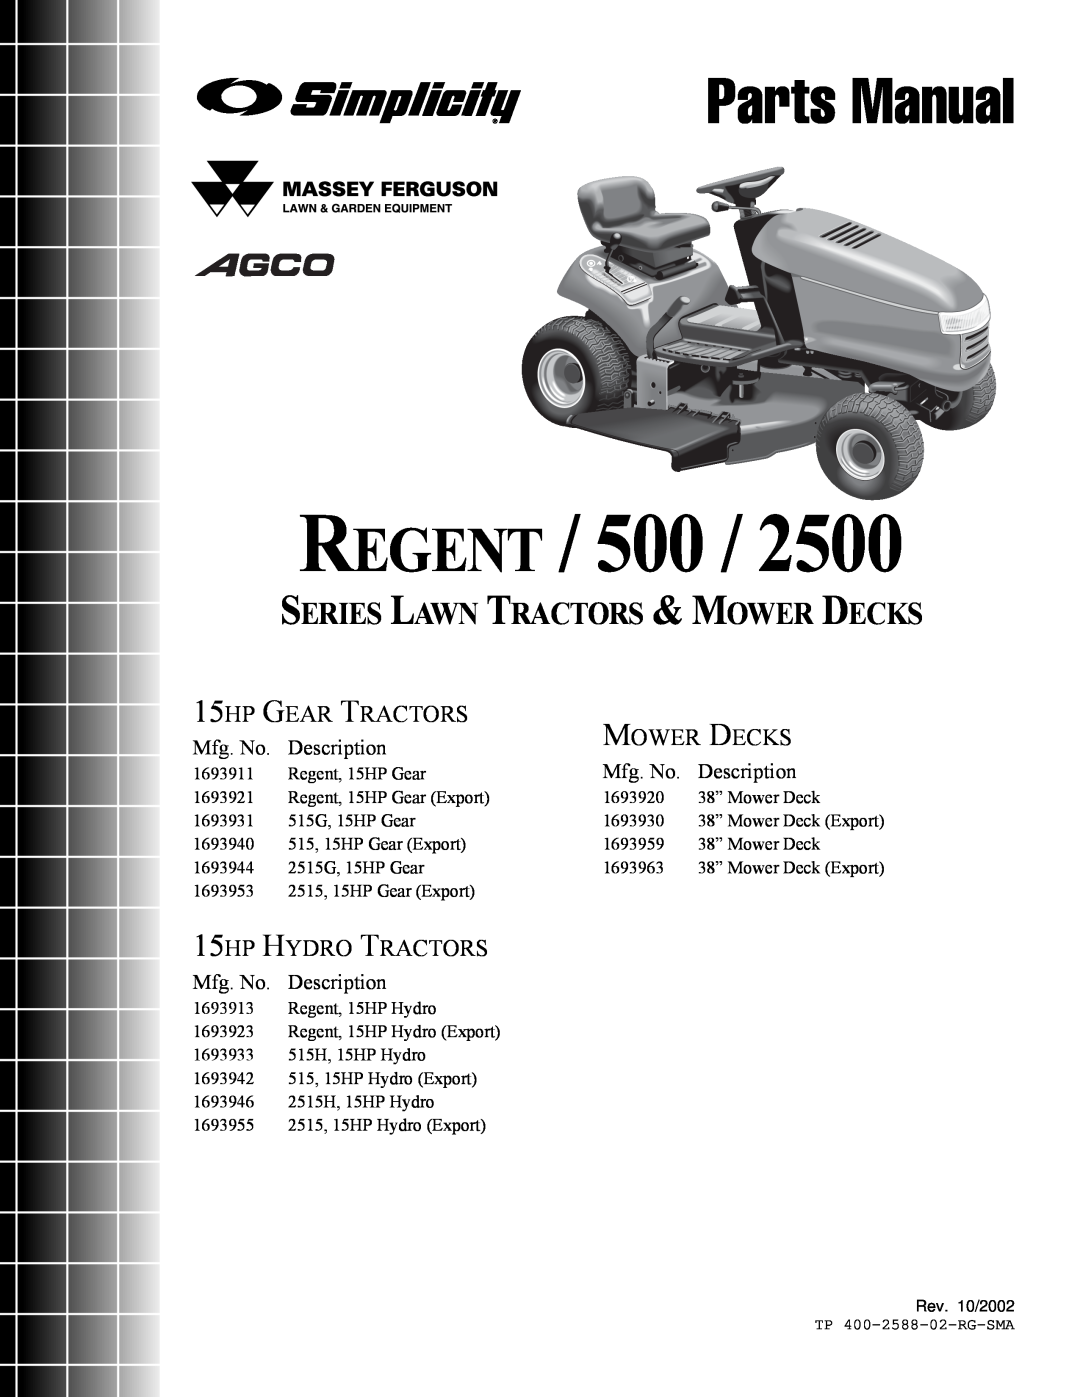 Simplicity 500 Series manual REGENT / 500, Parts Manual, Series Lawn Tractors & Mower Decks, 15HP GEAR TRACTORS, Mfg. No 